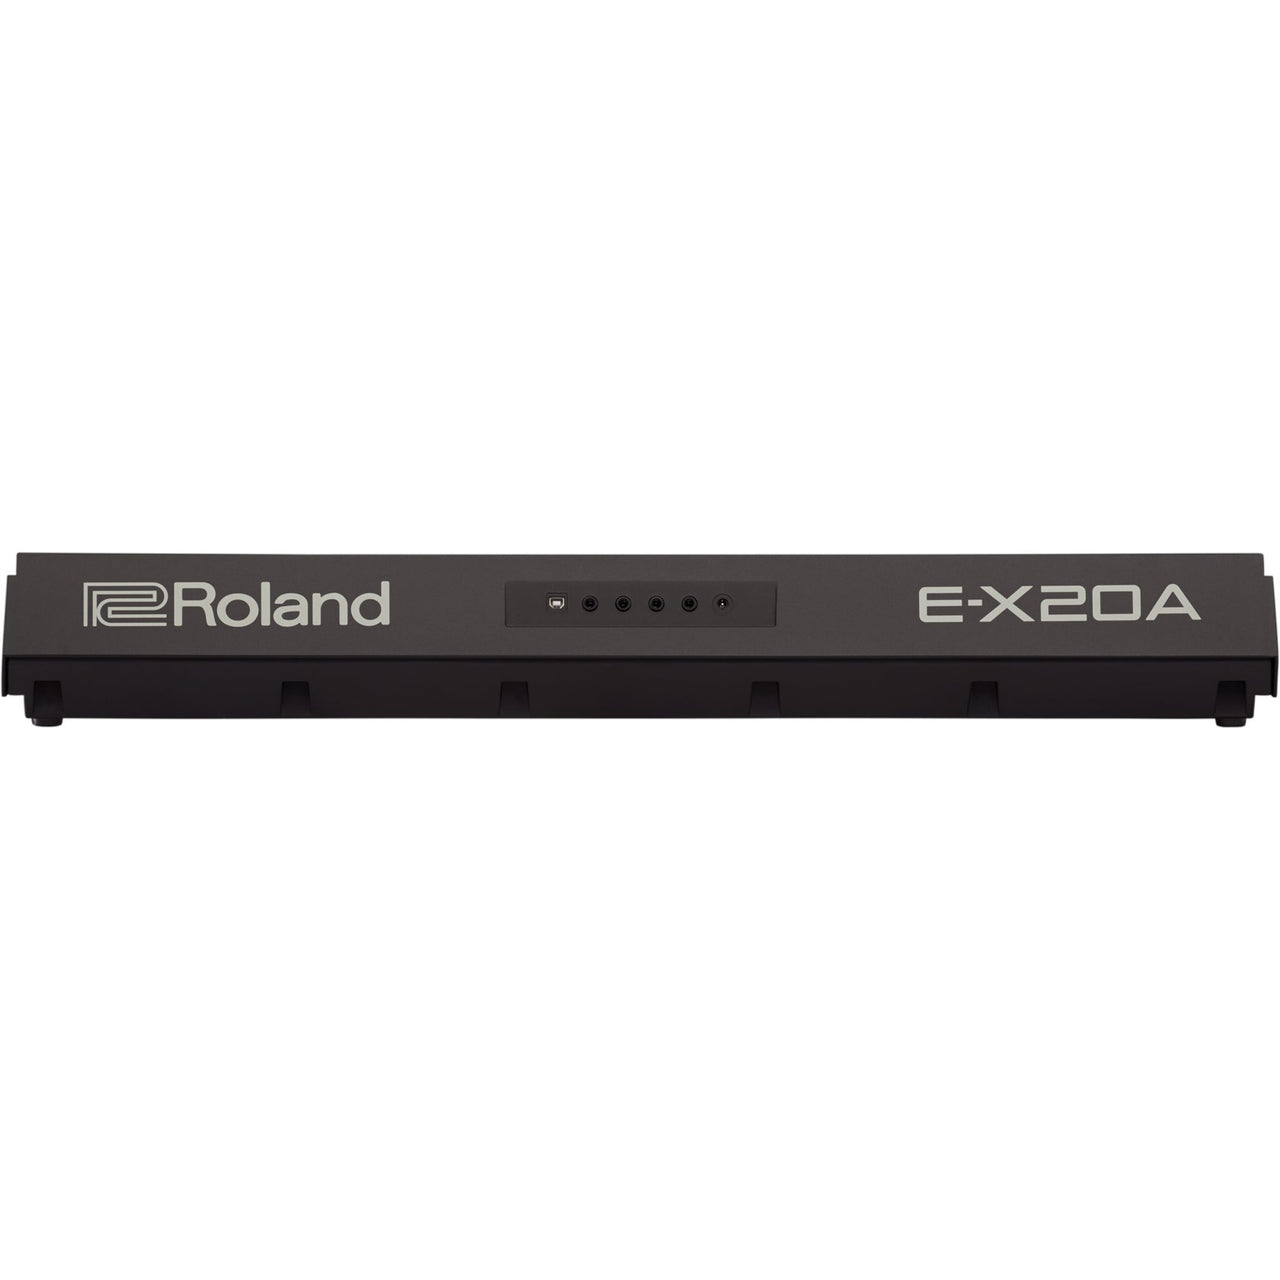 Teclado Roland Arranger 61 Teclas C/Bocina 2x5" 6w, E-X20A